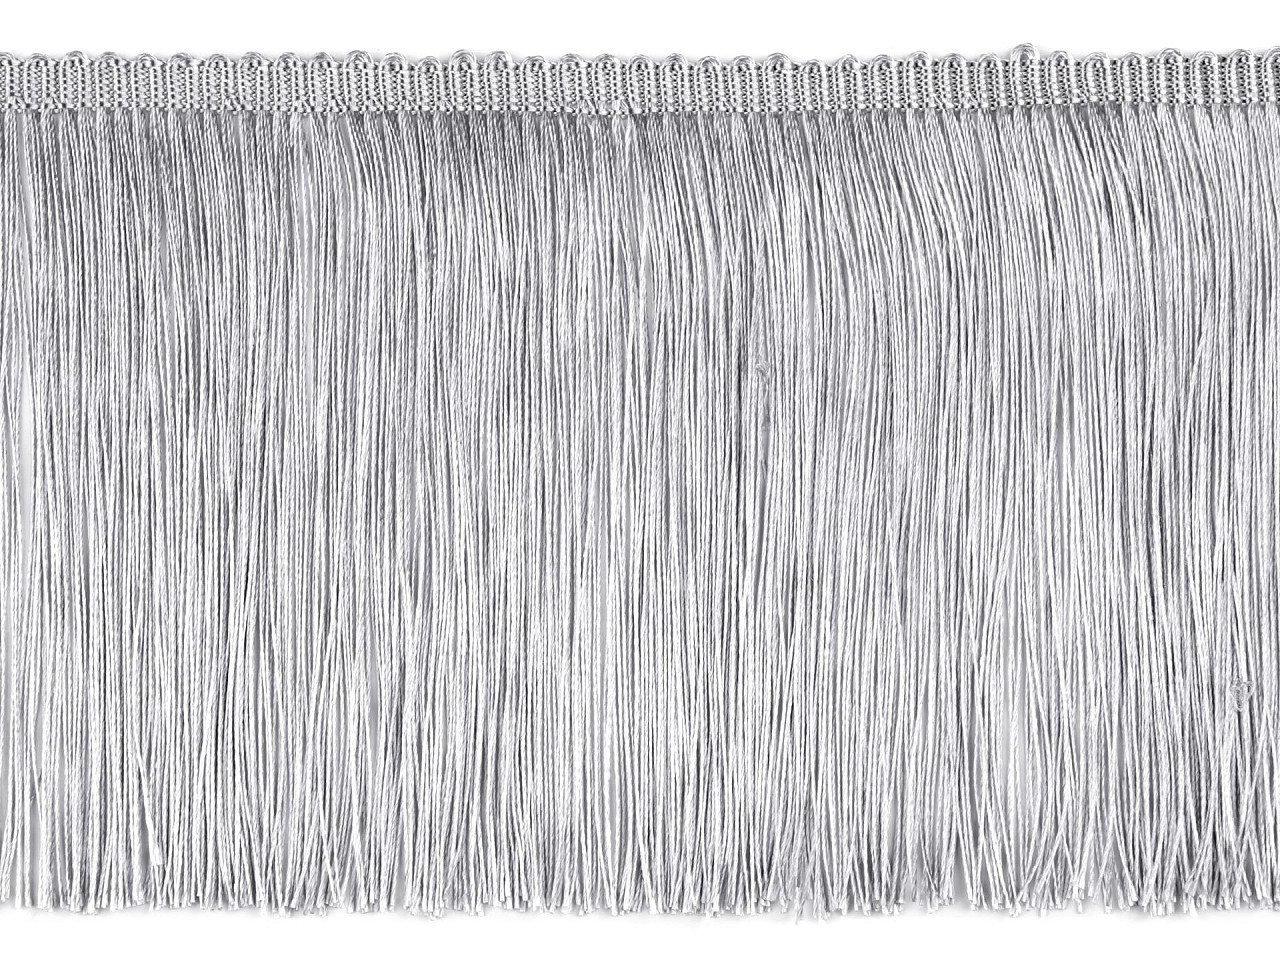 Třásně lesklé, husté šíře 15,5 cm, barva 5 stříbrná